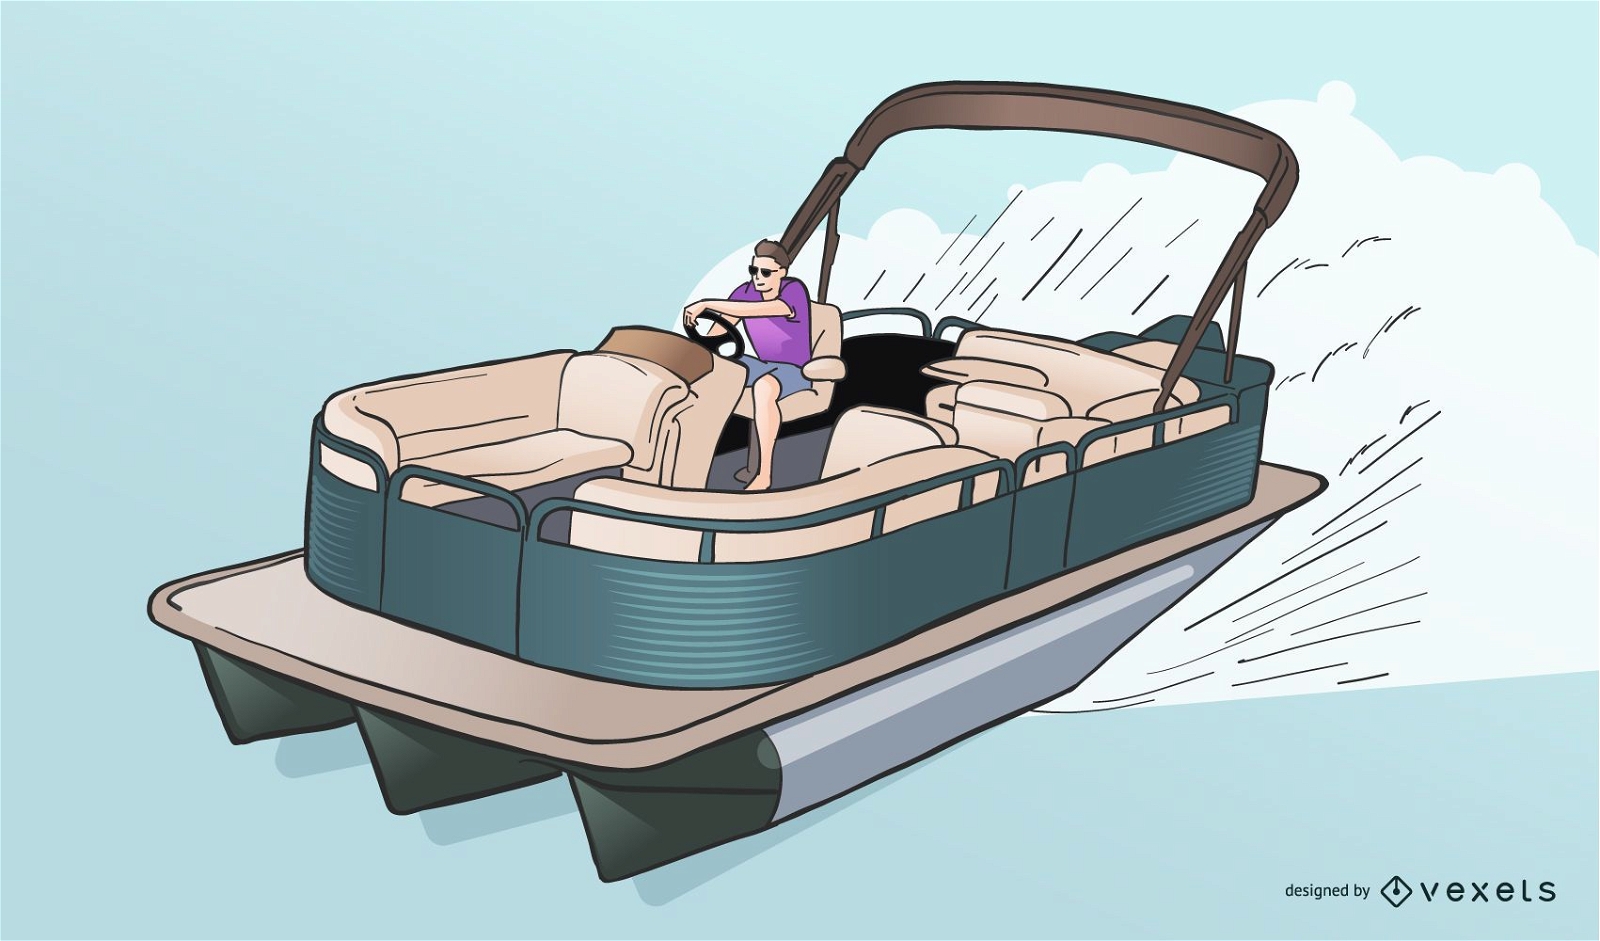 Speeding Pontoon Boat Vector Illustration